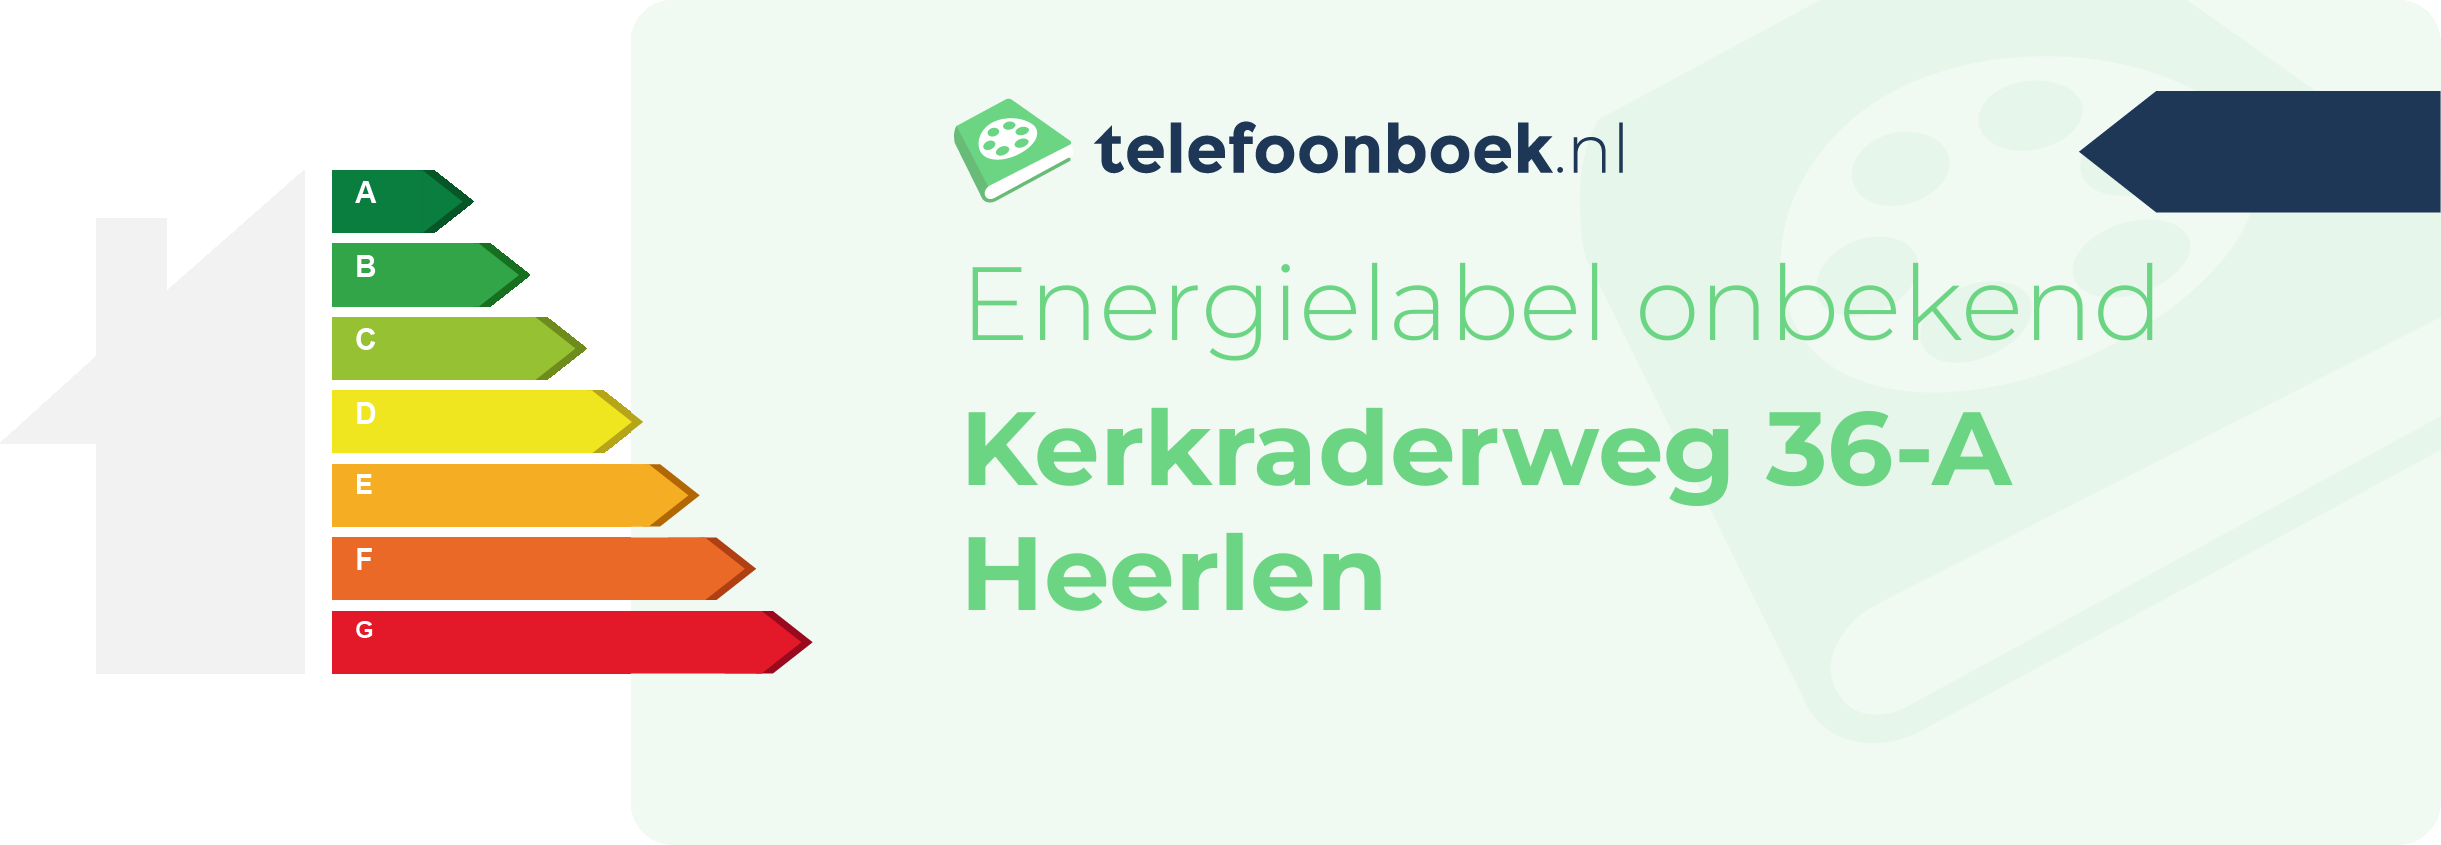 Energielabel Kerkraderweg 36-A Heerlen